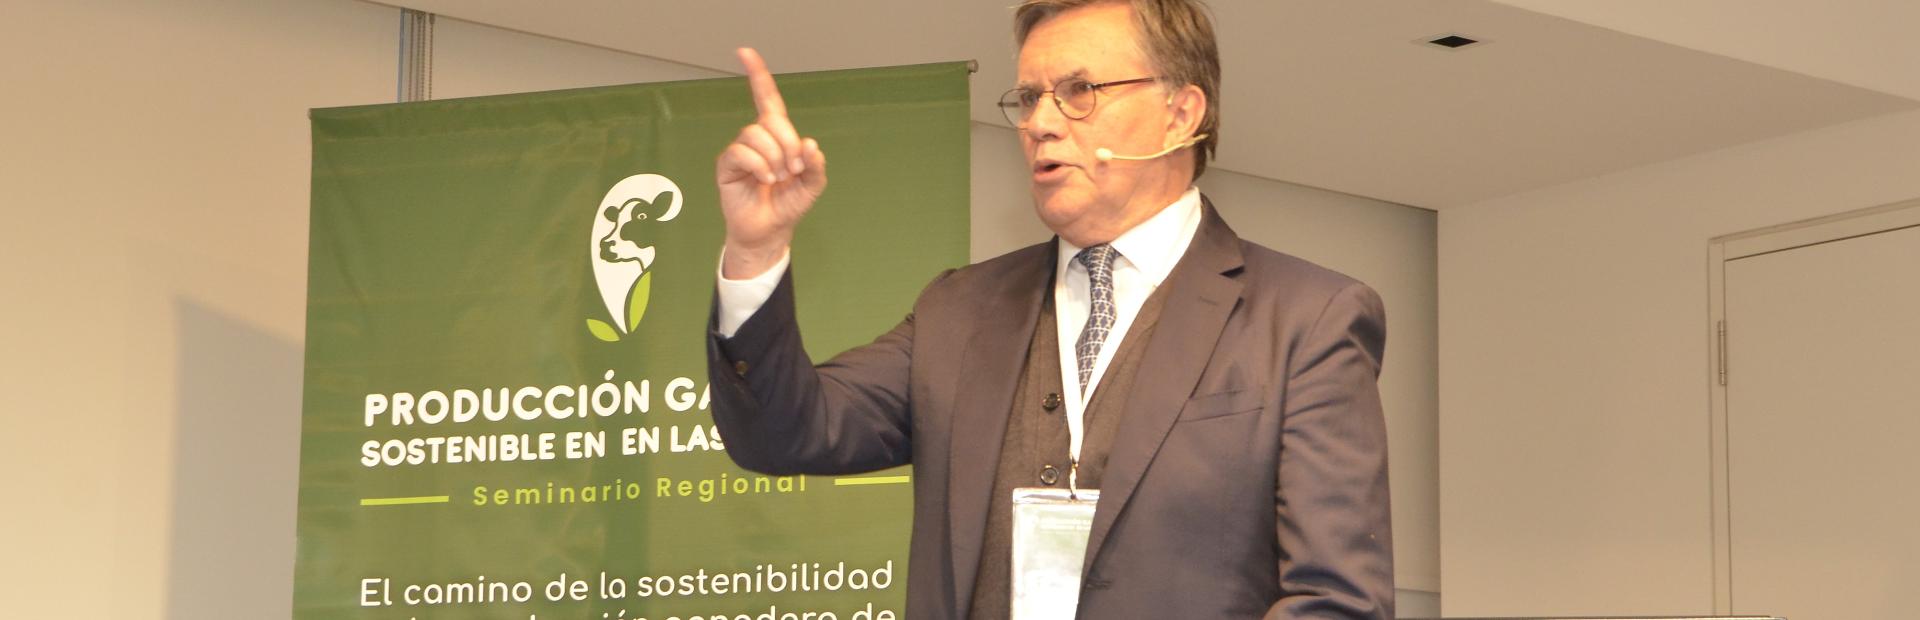 Manuel Otero Director General de IICA participó en el Seminario Regional “El camino de la sostenibilidad en la producción ganadera de las Américas”, realizado en Buenos Aires, Argentina.